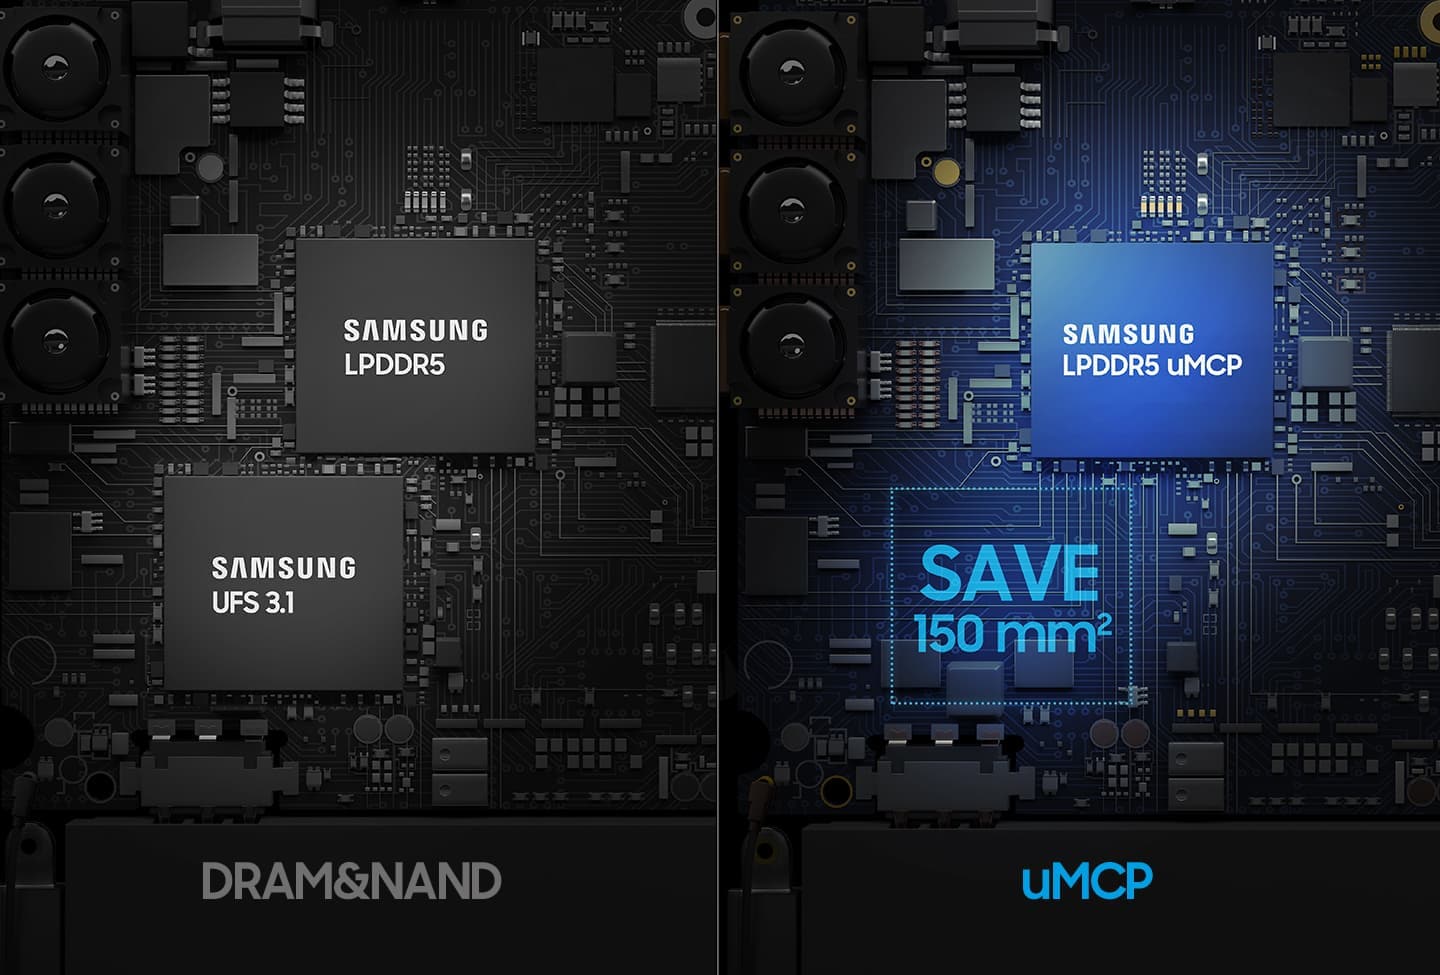 왼쪽에는 LPDDR5 와 UFS 3.1의 제품이 있고, 오른쪽에는 SAMSUNG LPDDR5 uMCP 제품이 있으며 배치된 공간의 크기를 비교 하는 이미지입니다.